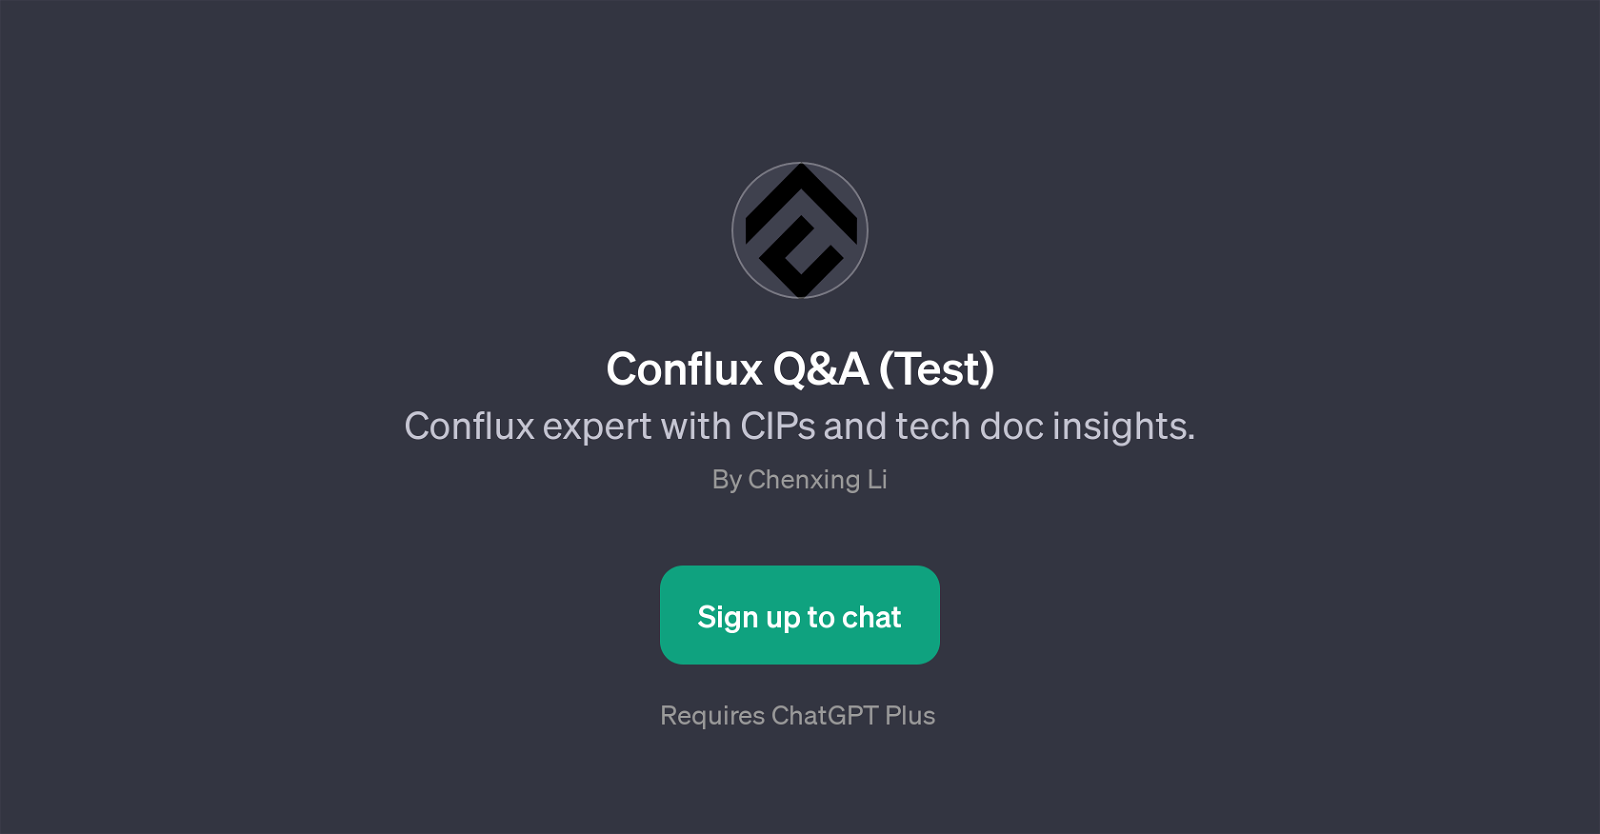 Conflux Q&A (Test) website